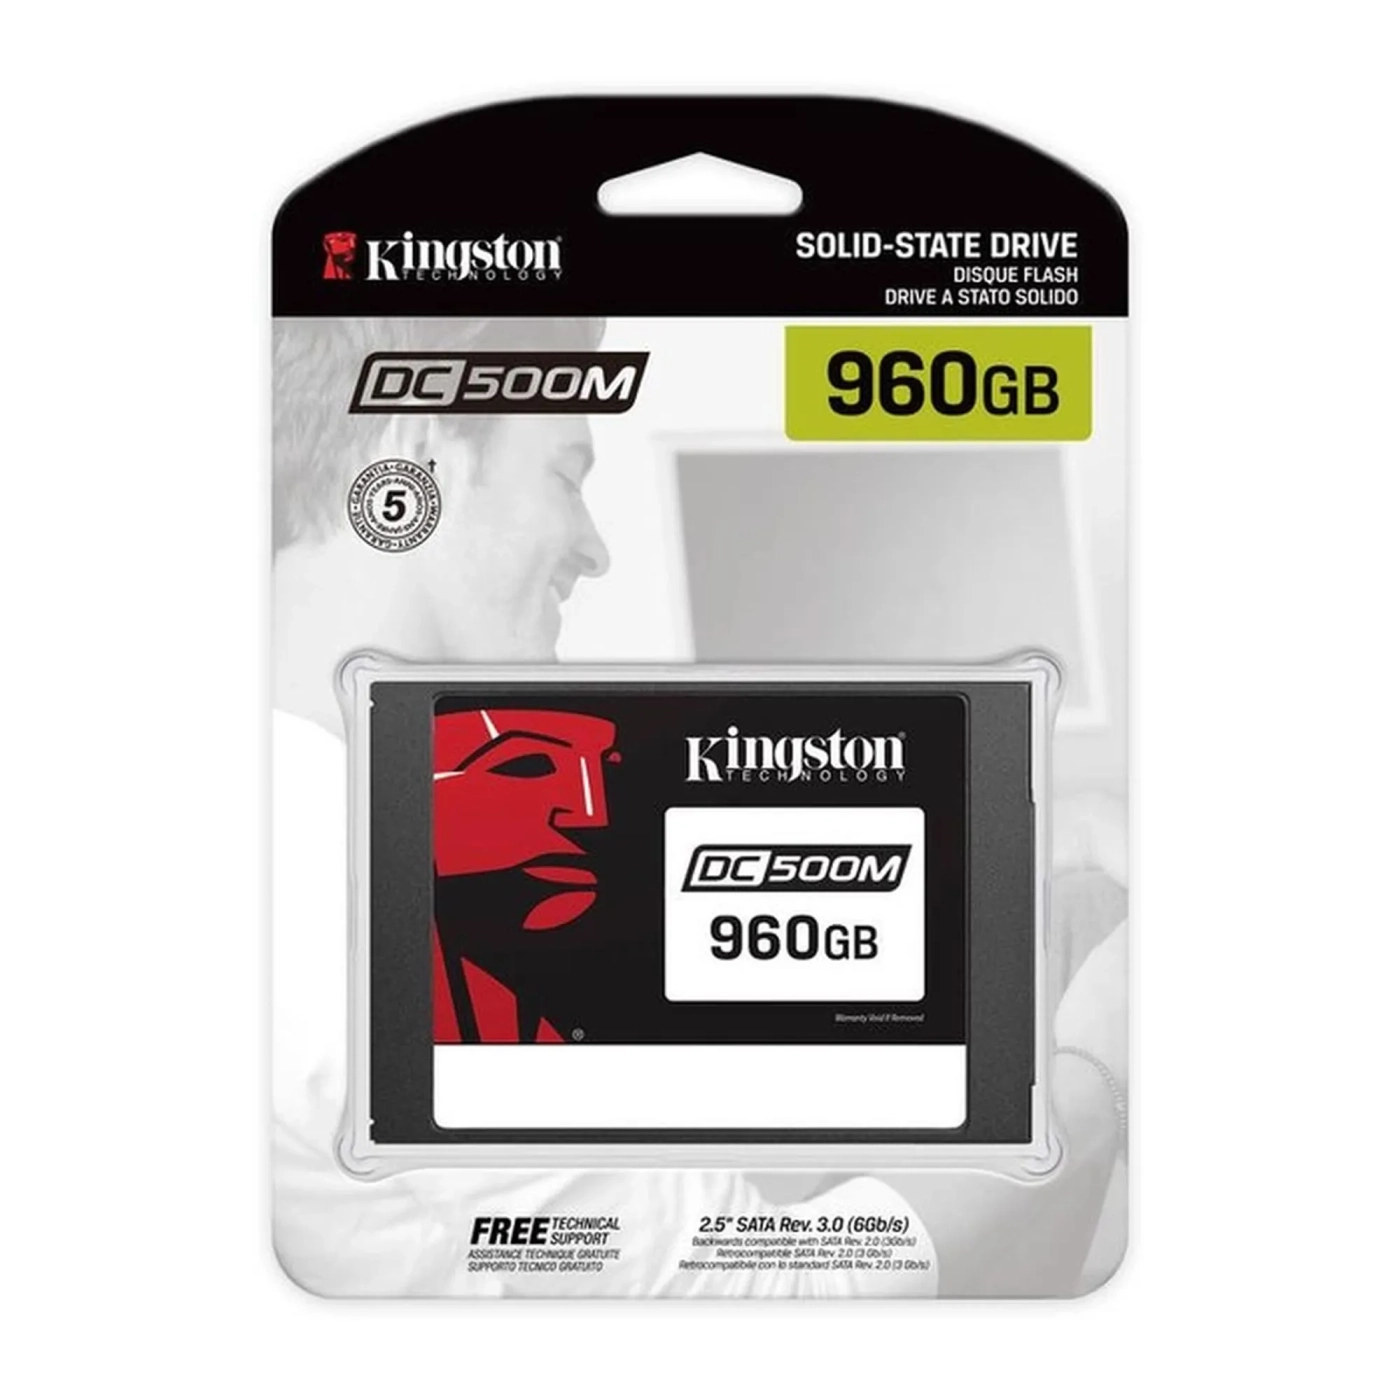 Купить SSD диск Kingston DC500M 960GB 2.5" SATA III (SEDC500M/960G) - фото 3